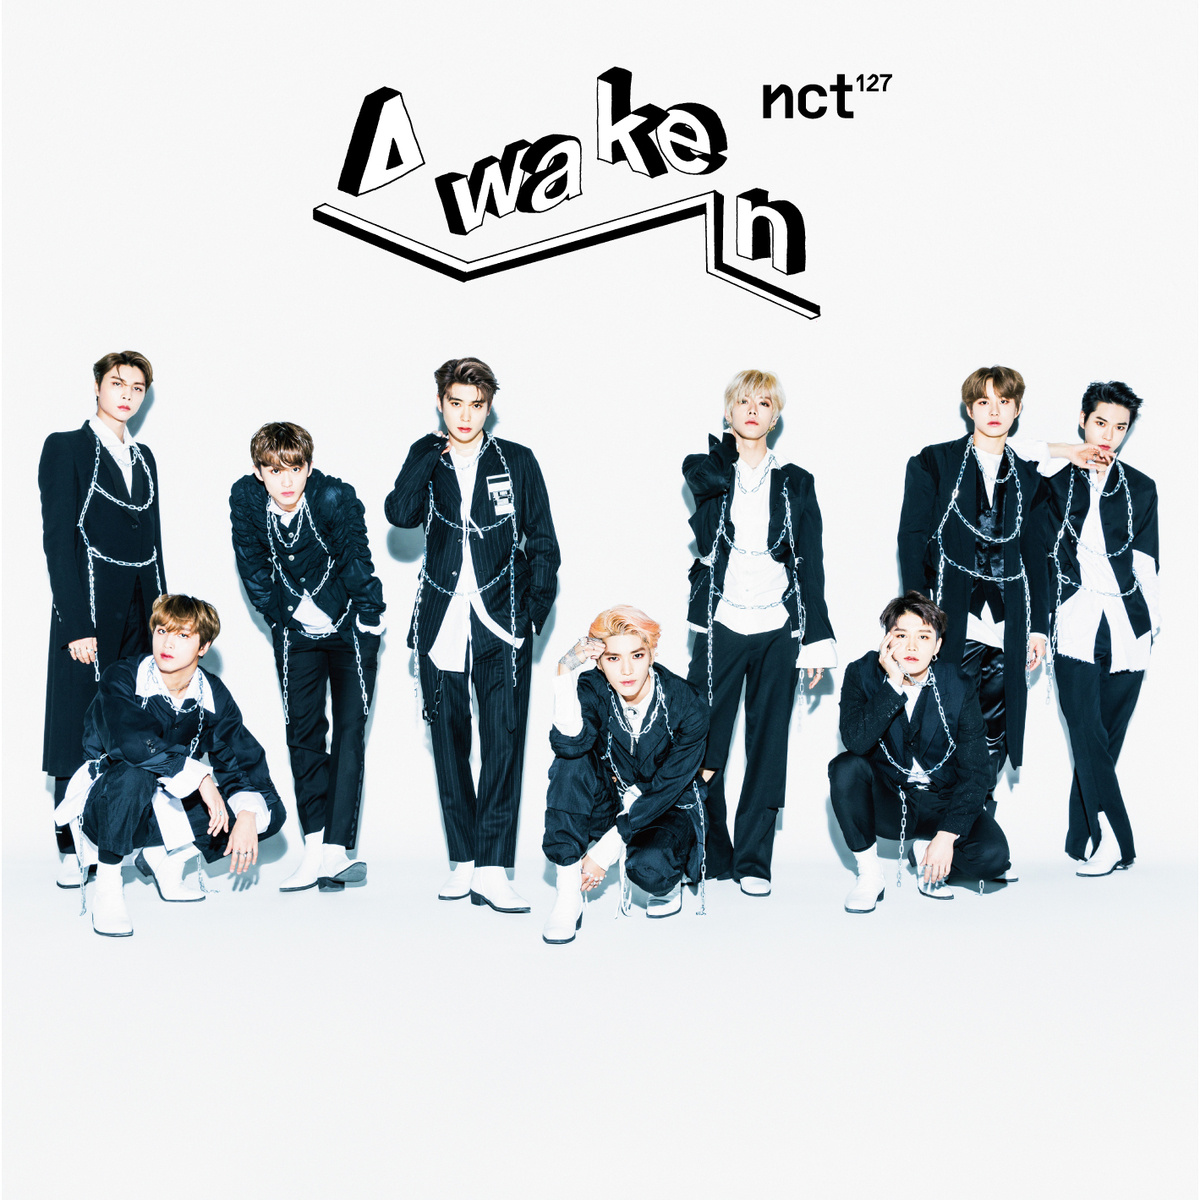 Awaken(韓國男團NCT 127音樂專輯)